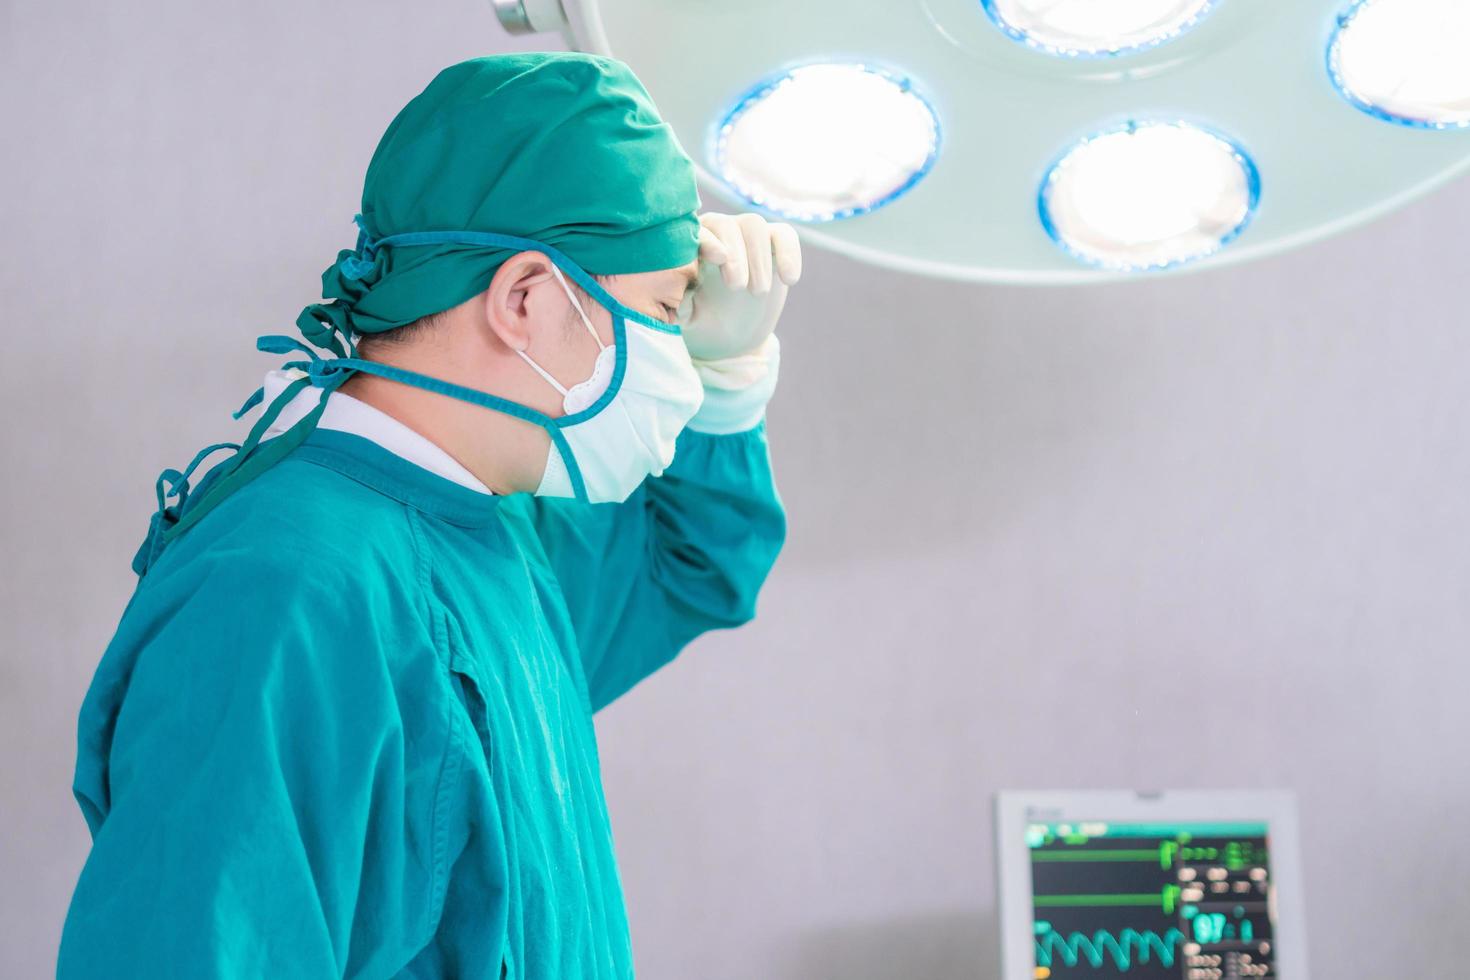 chirurgien masculin portant un masque chirurgical en salle d'opération à l'hôpital, médecin en salle d'opération photo